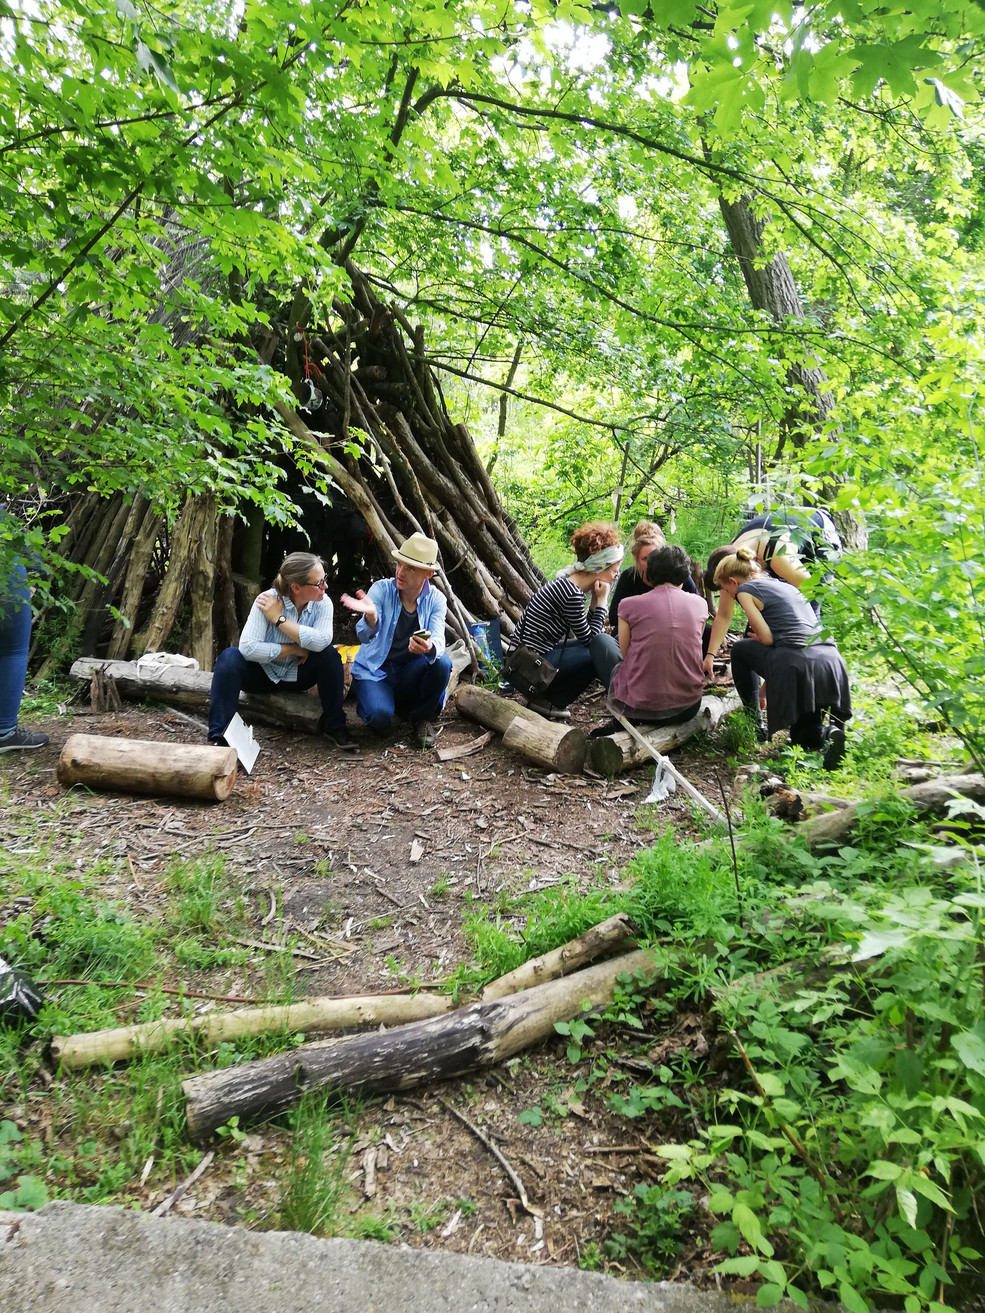 Zu sehen sind mehrere Personen im Wald, sitzend auf abgetrennten Baumstämmen